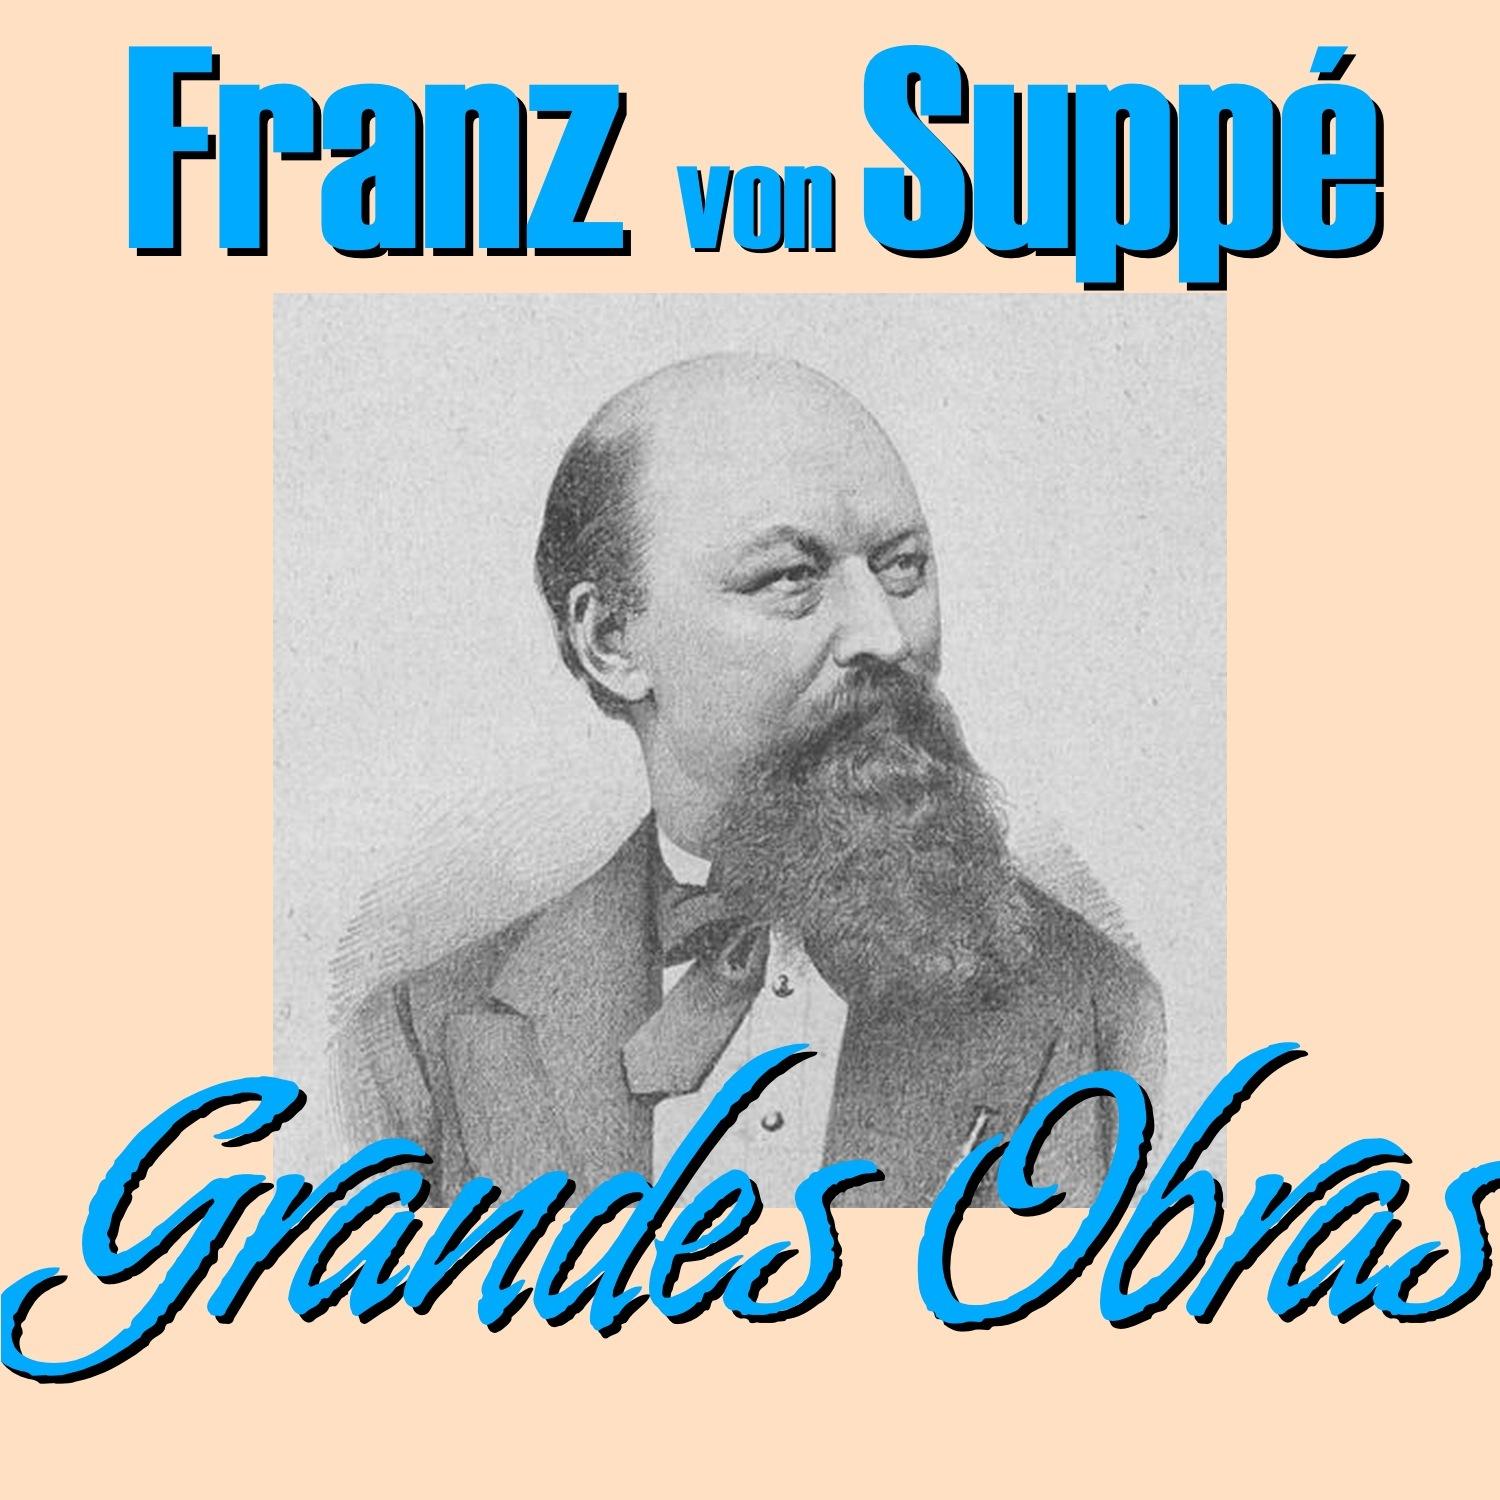 Franz von Suppé Grandes Obras